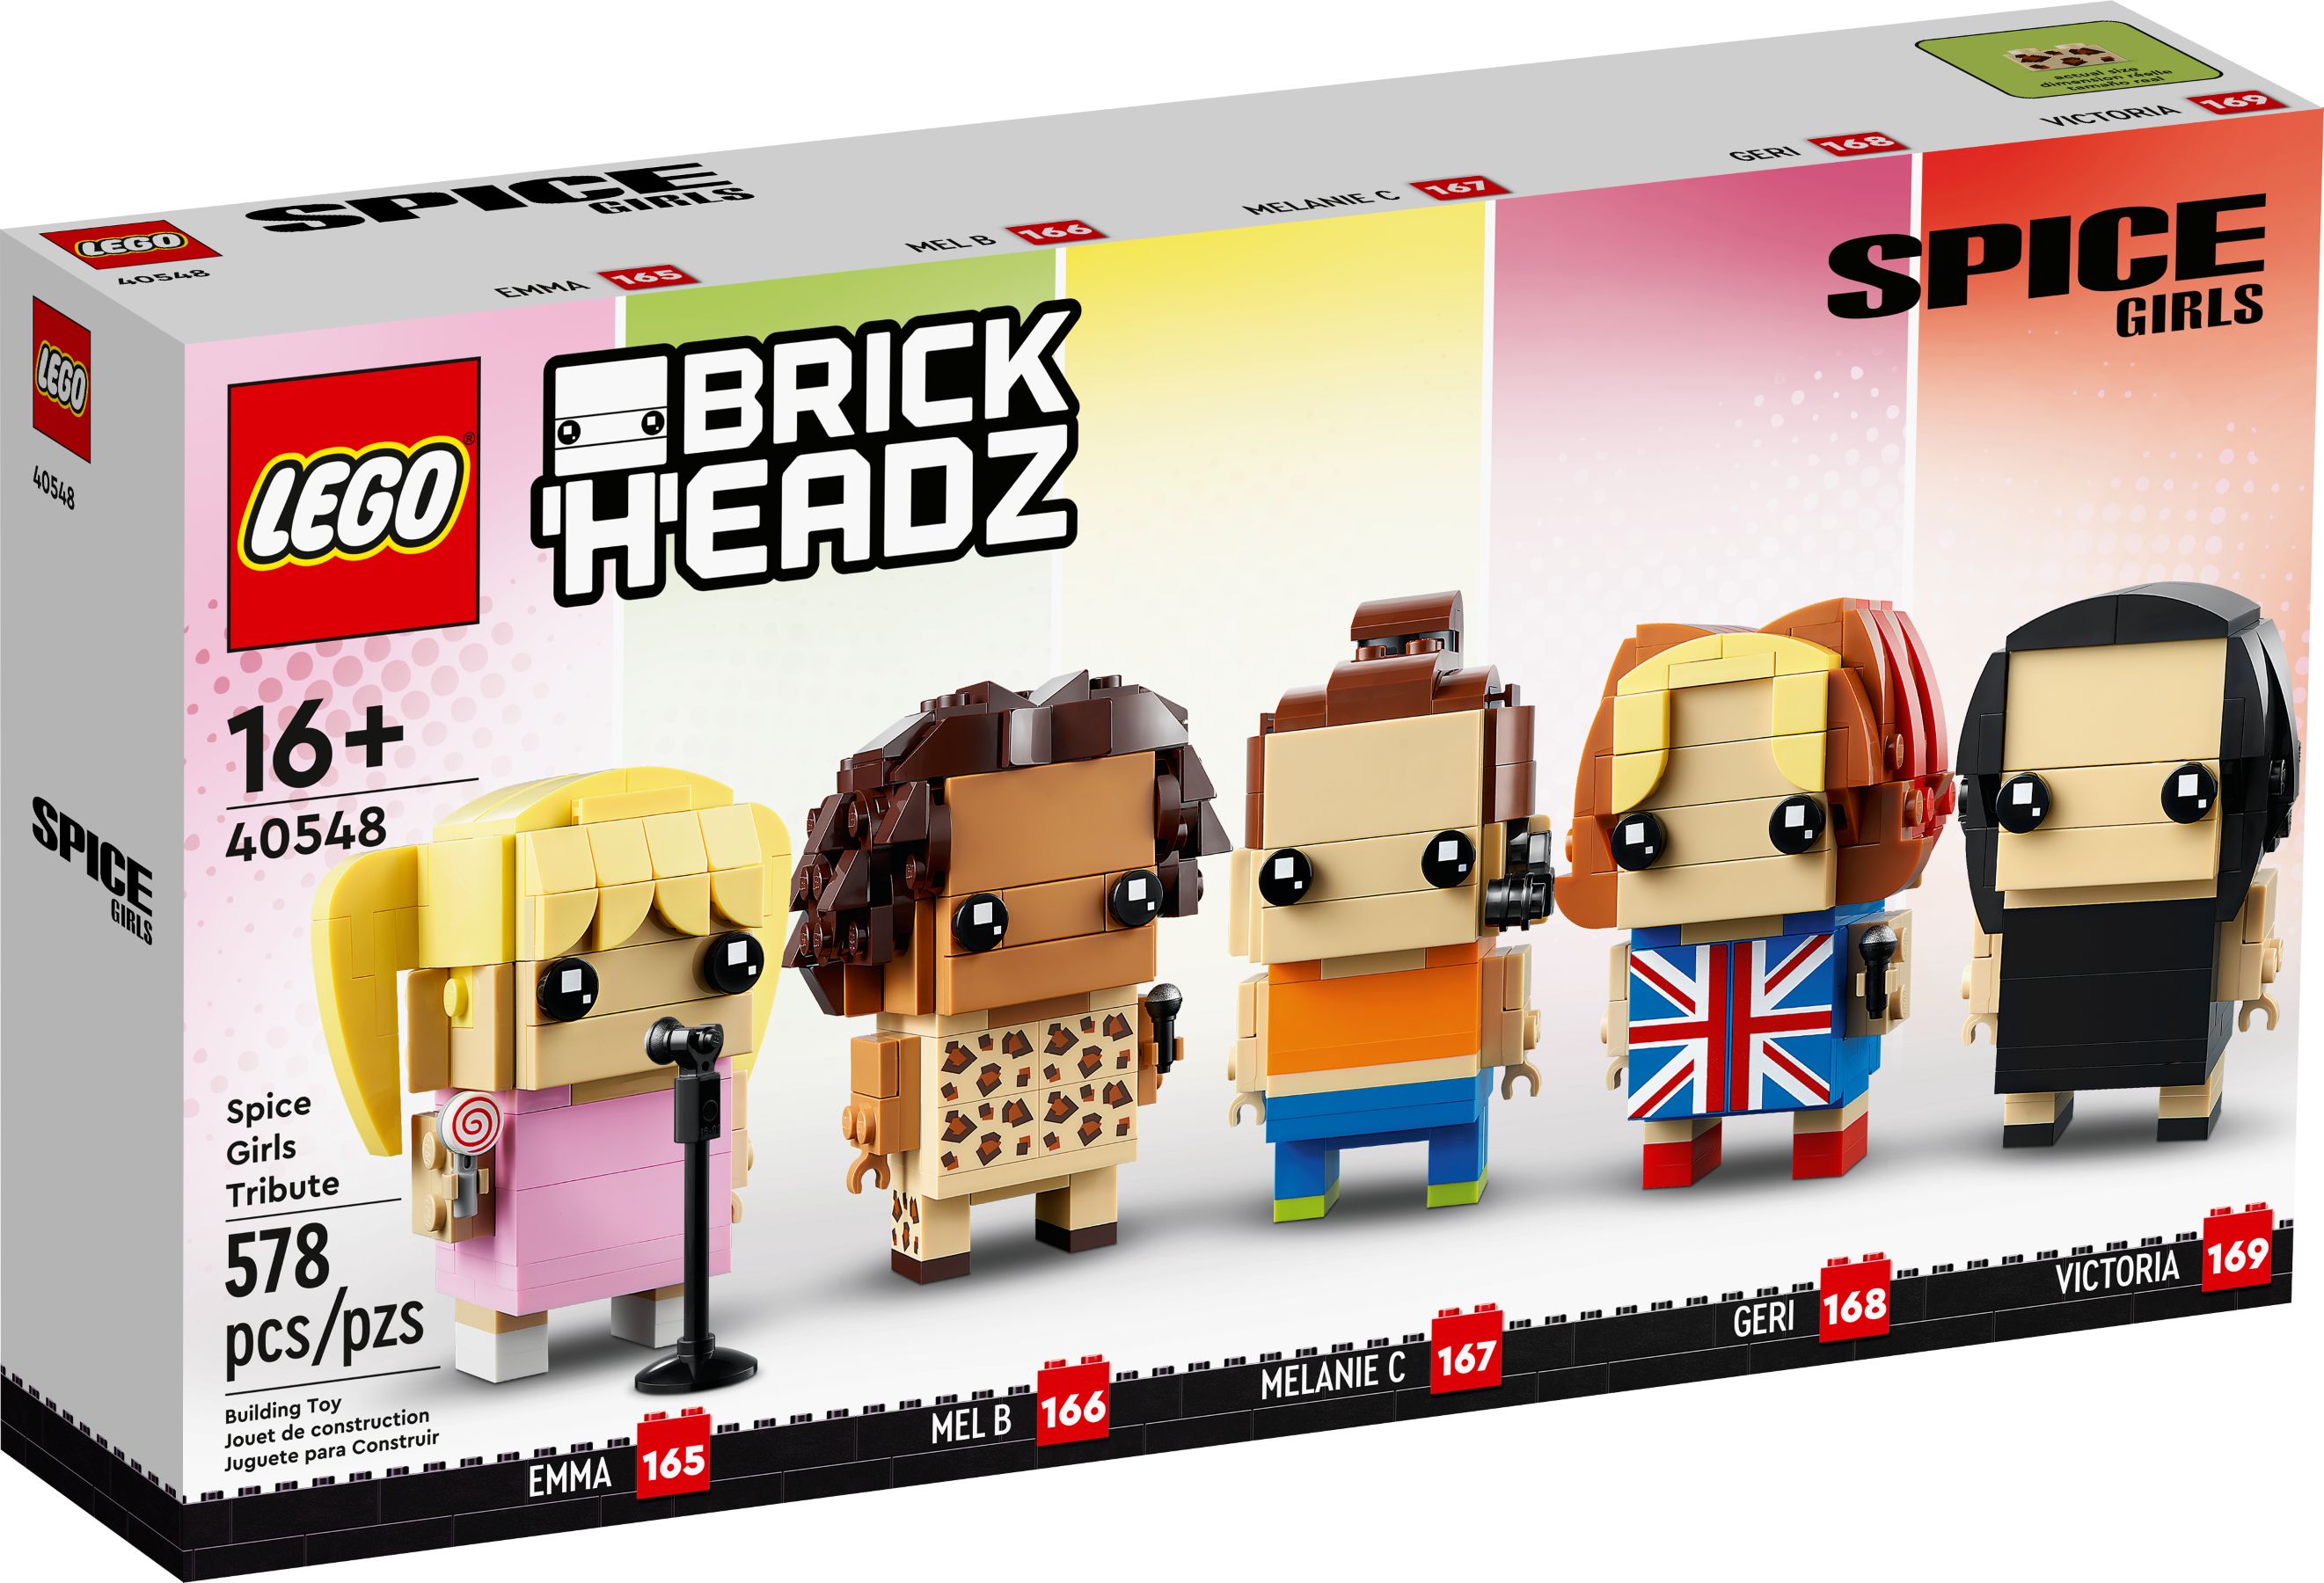 LEGO BrickHeadz 40548 Hommage an die Spice Girls LEGO_40548_alt1.jpg